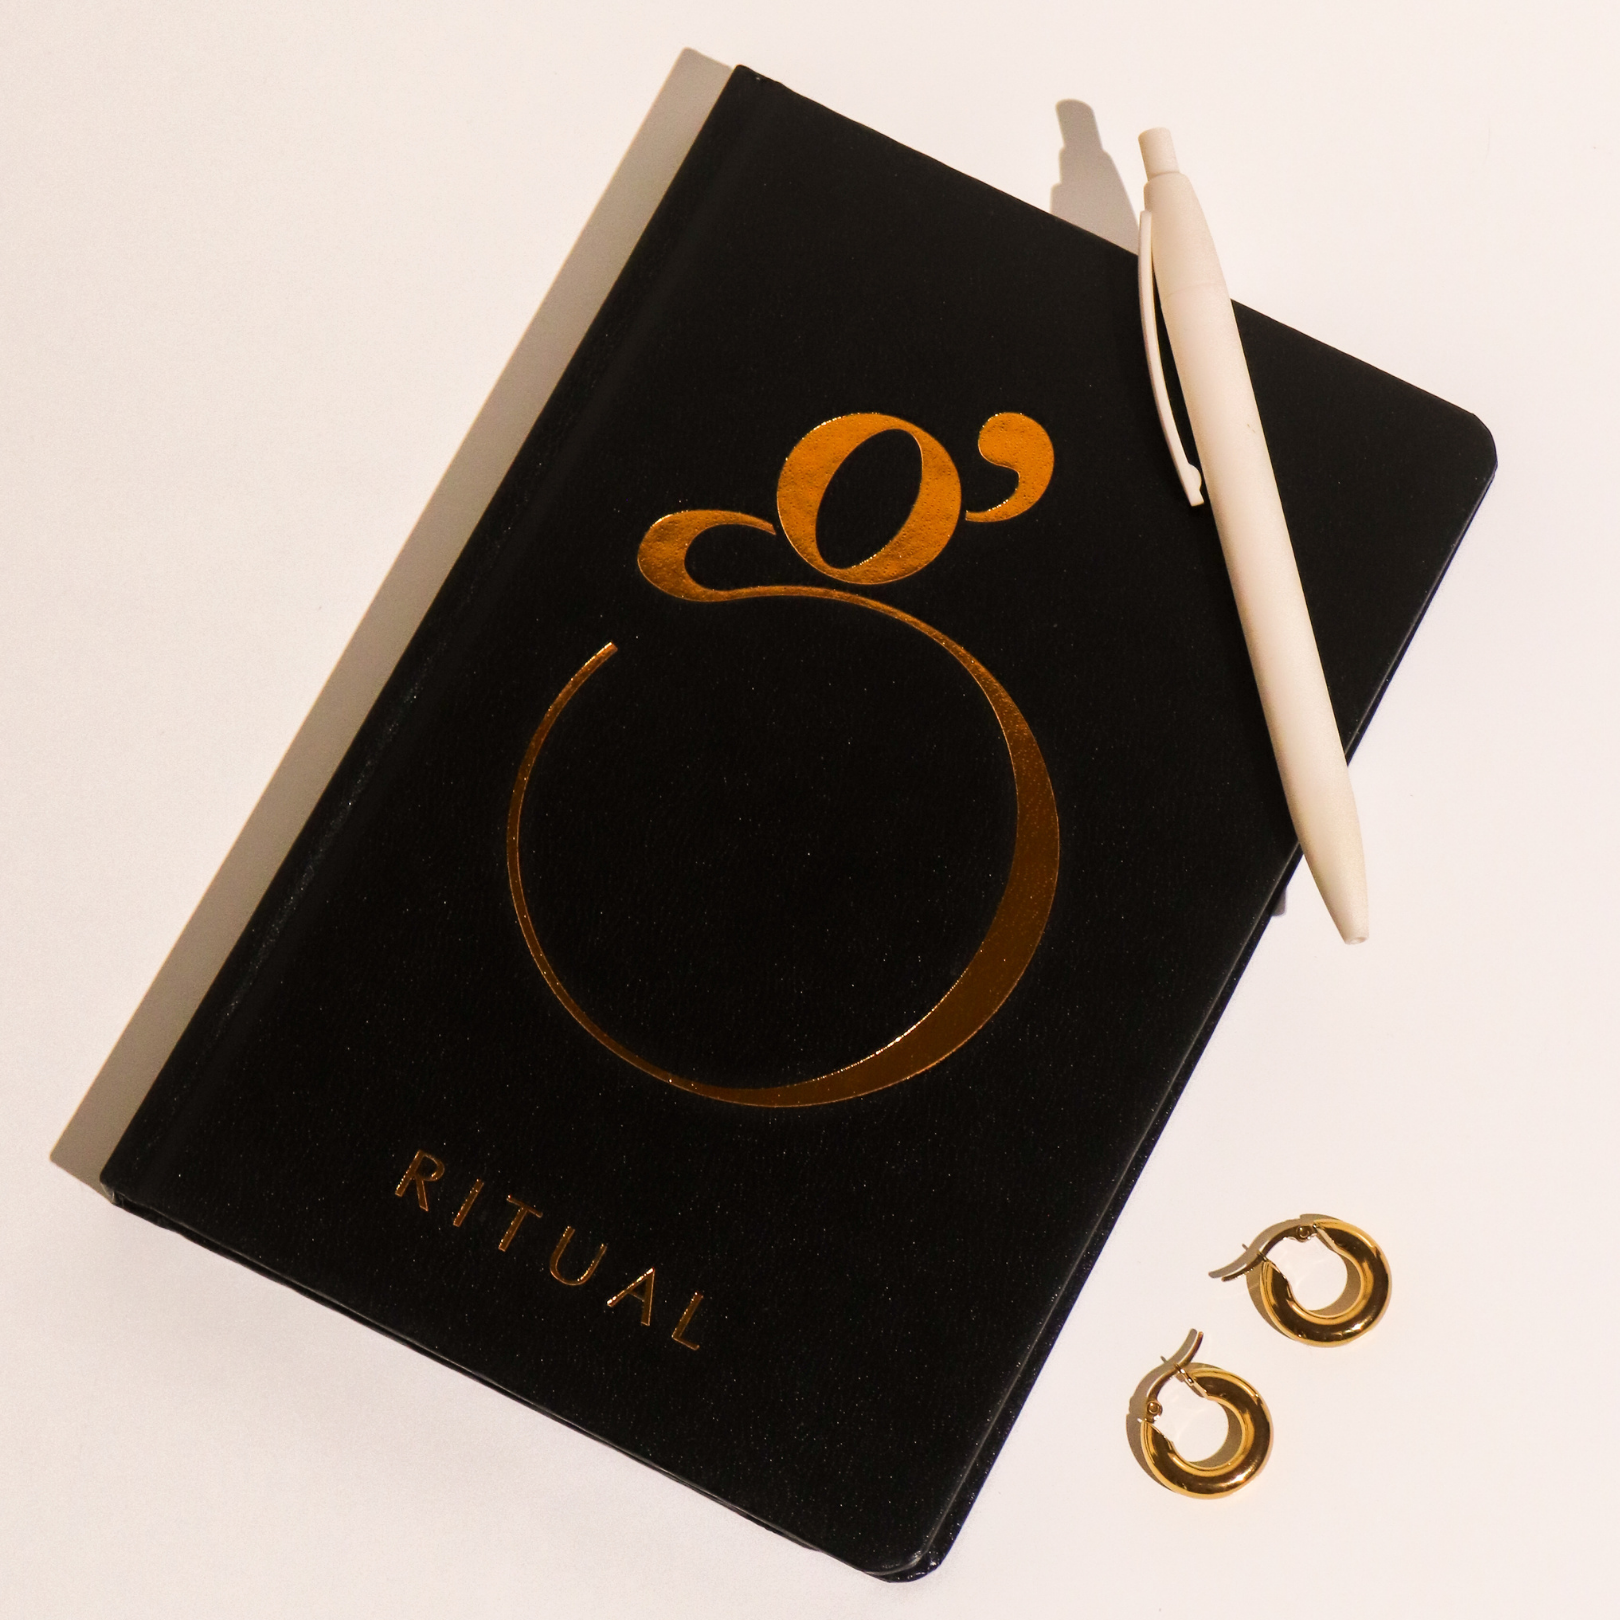 Ritual Journal